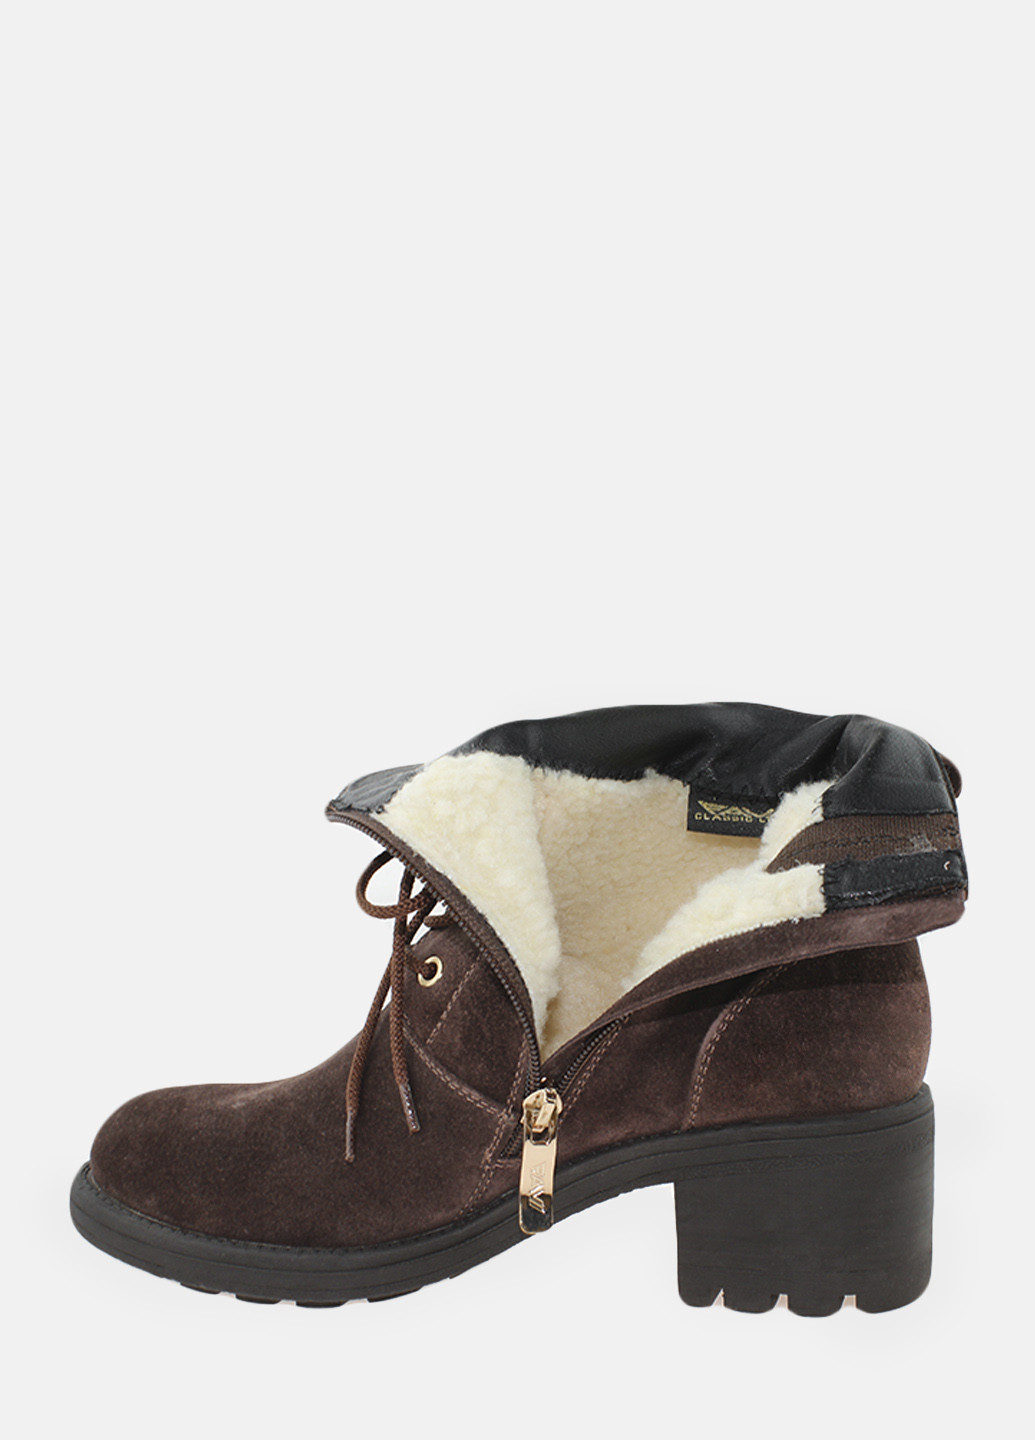 Зимние ботинки rf0965-11 коричневый Favi из натуральной замши